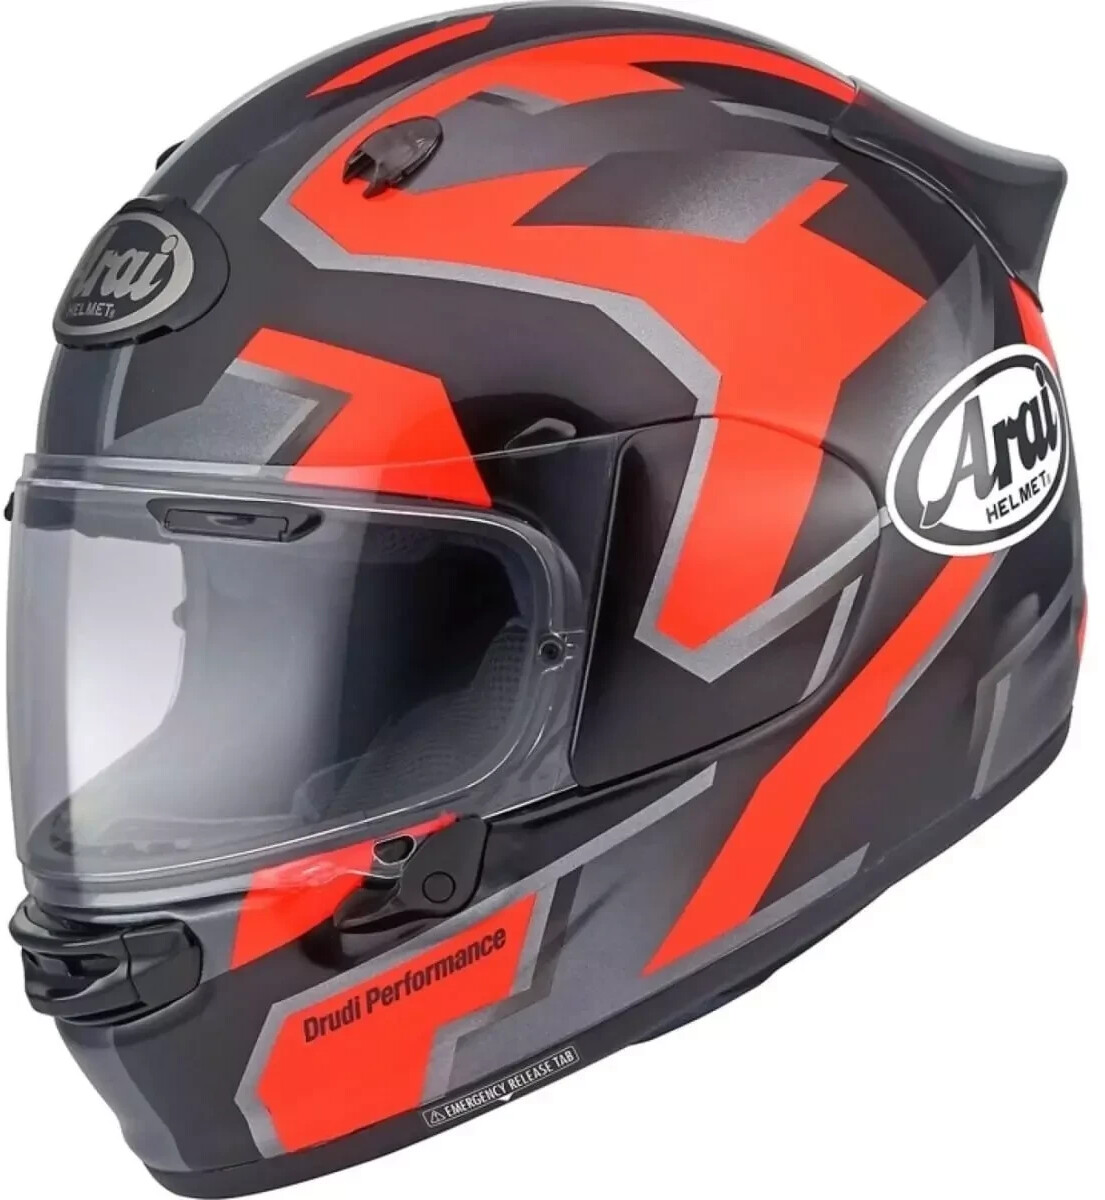 Photos - Motorcycle Helmet Arai Quantic Robotic black/red 